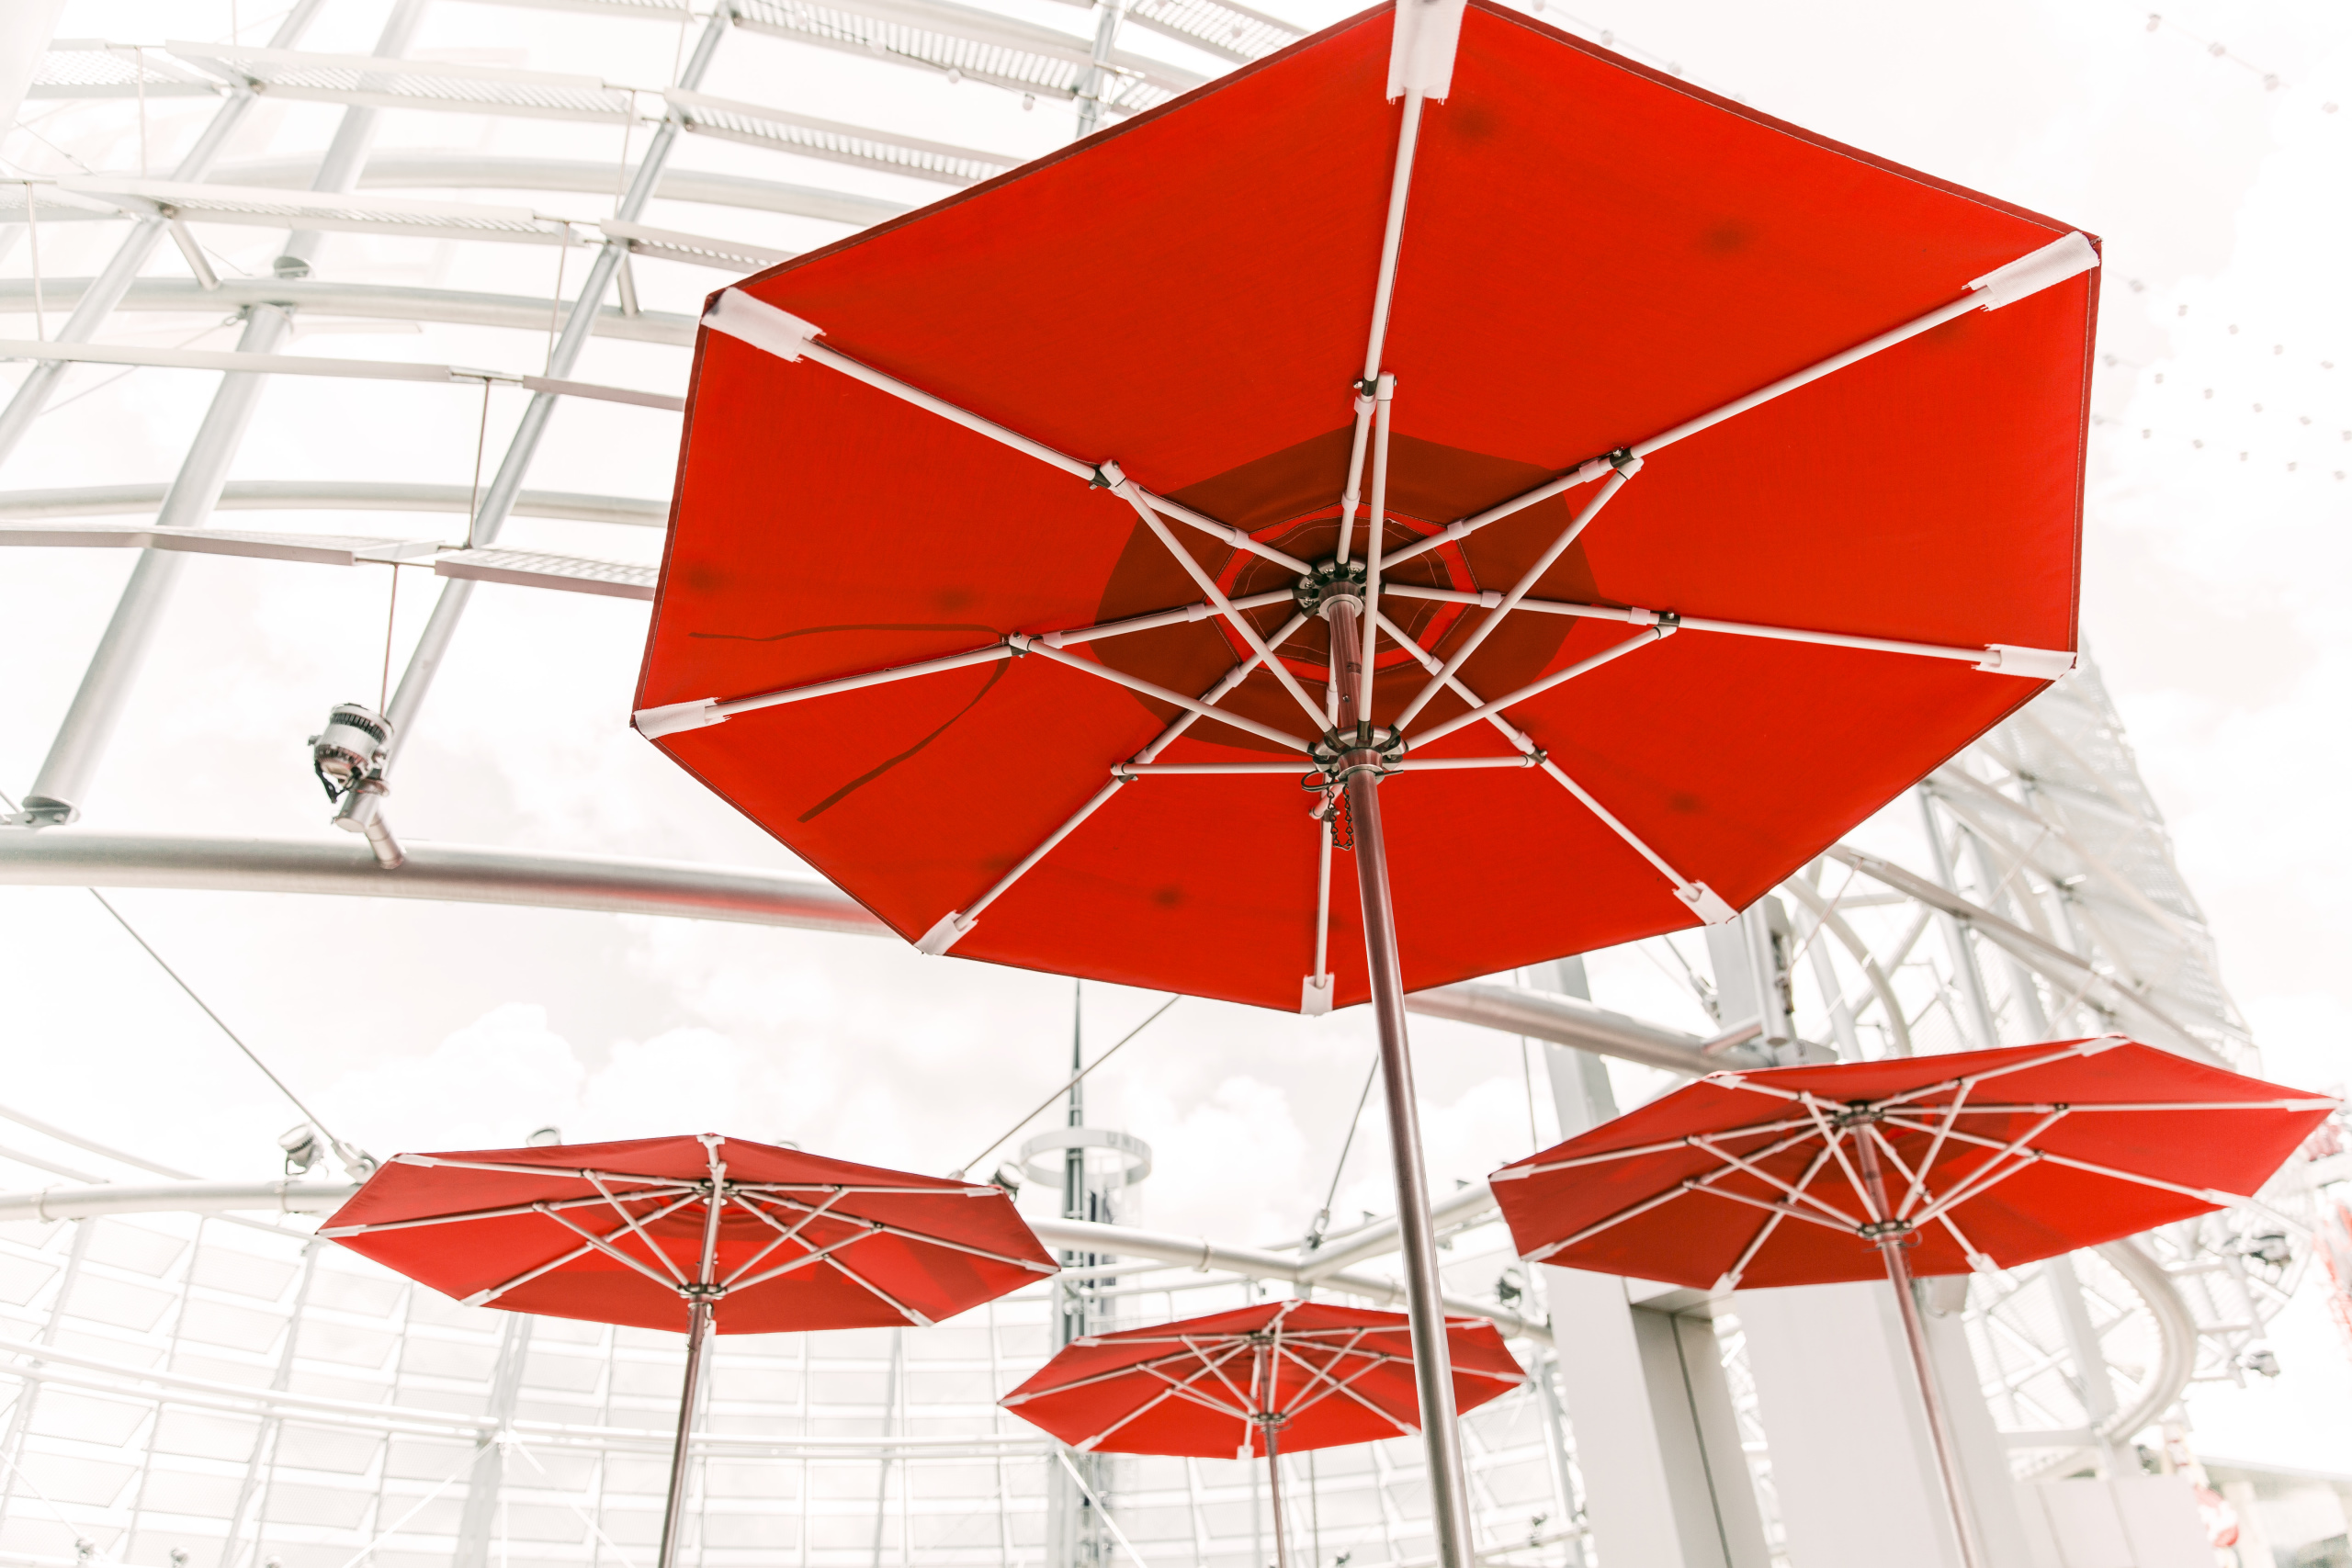 General 2560x1707 red building umbrella